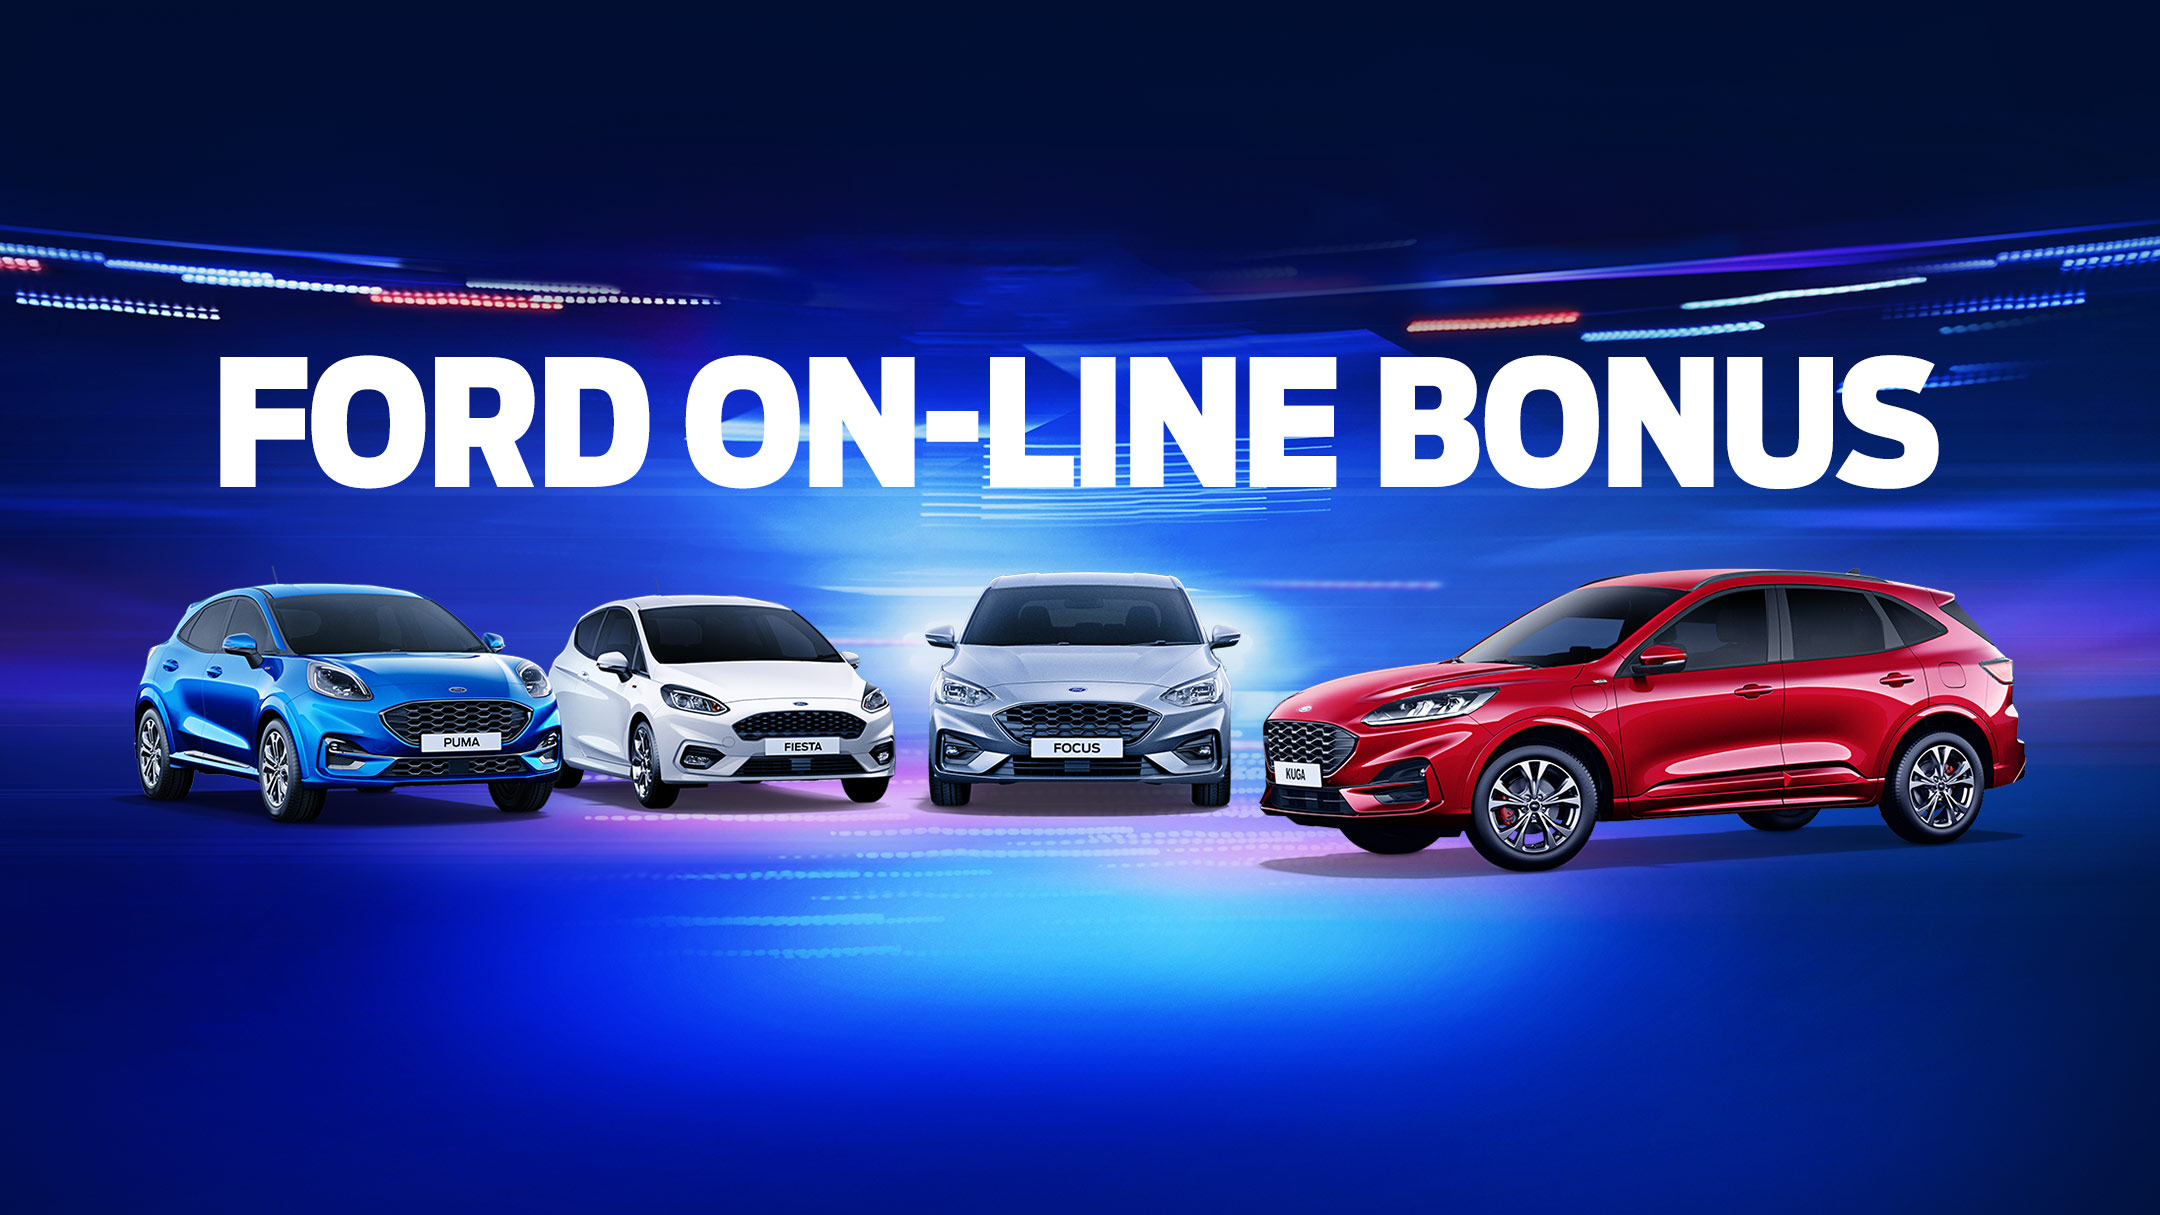 Η Ford Motor Ελλάς λανσάρει το νέο προωθητικό πρόγραμμα FORD ON-LINE BONUS